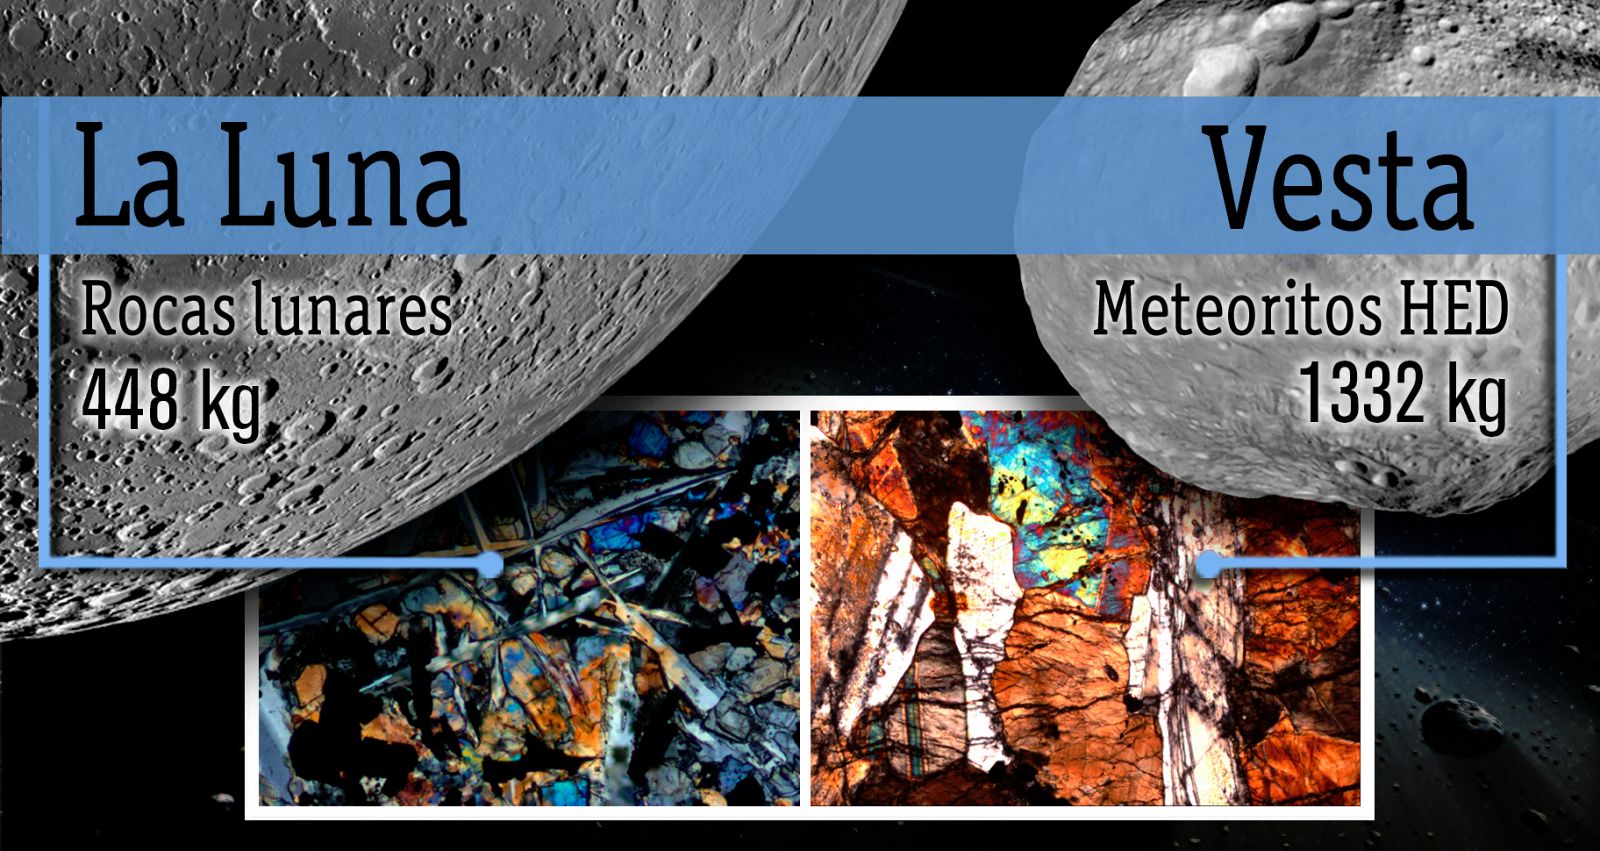 Comparación efectuada por la NASA entre las rocas lunares y los meteoritos HED